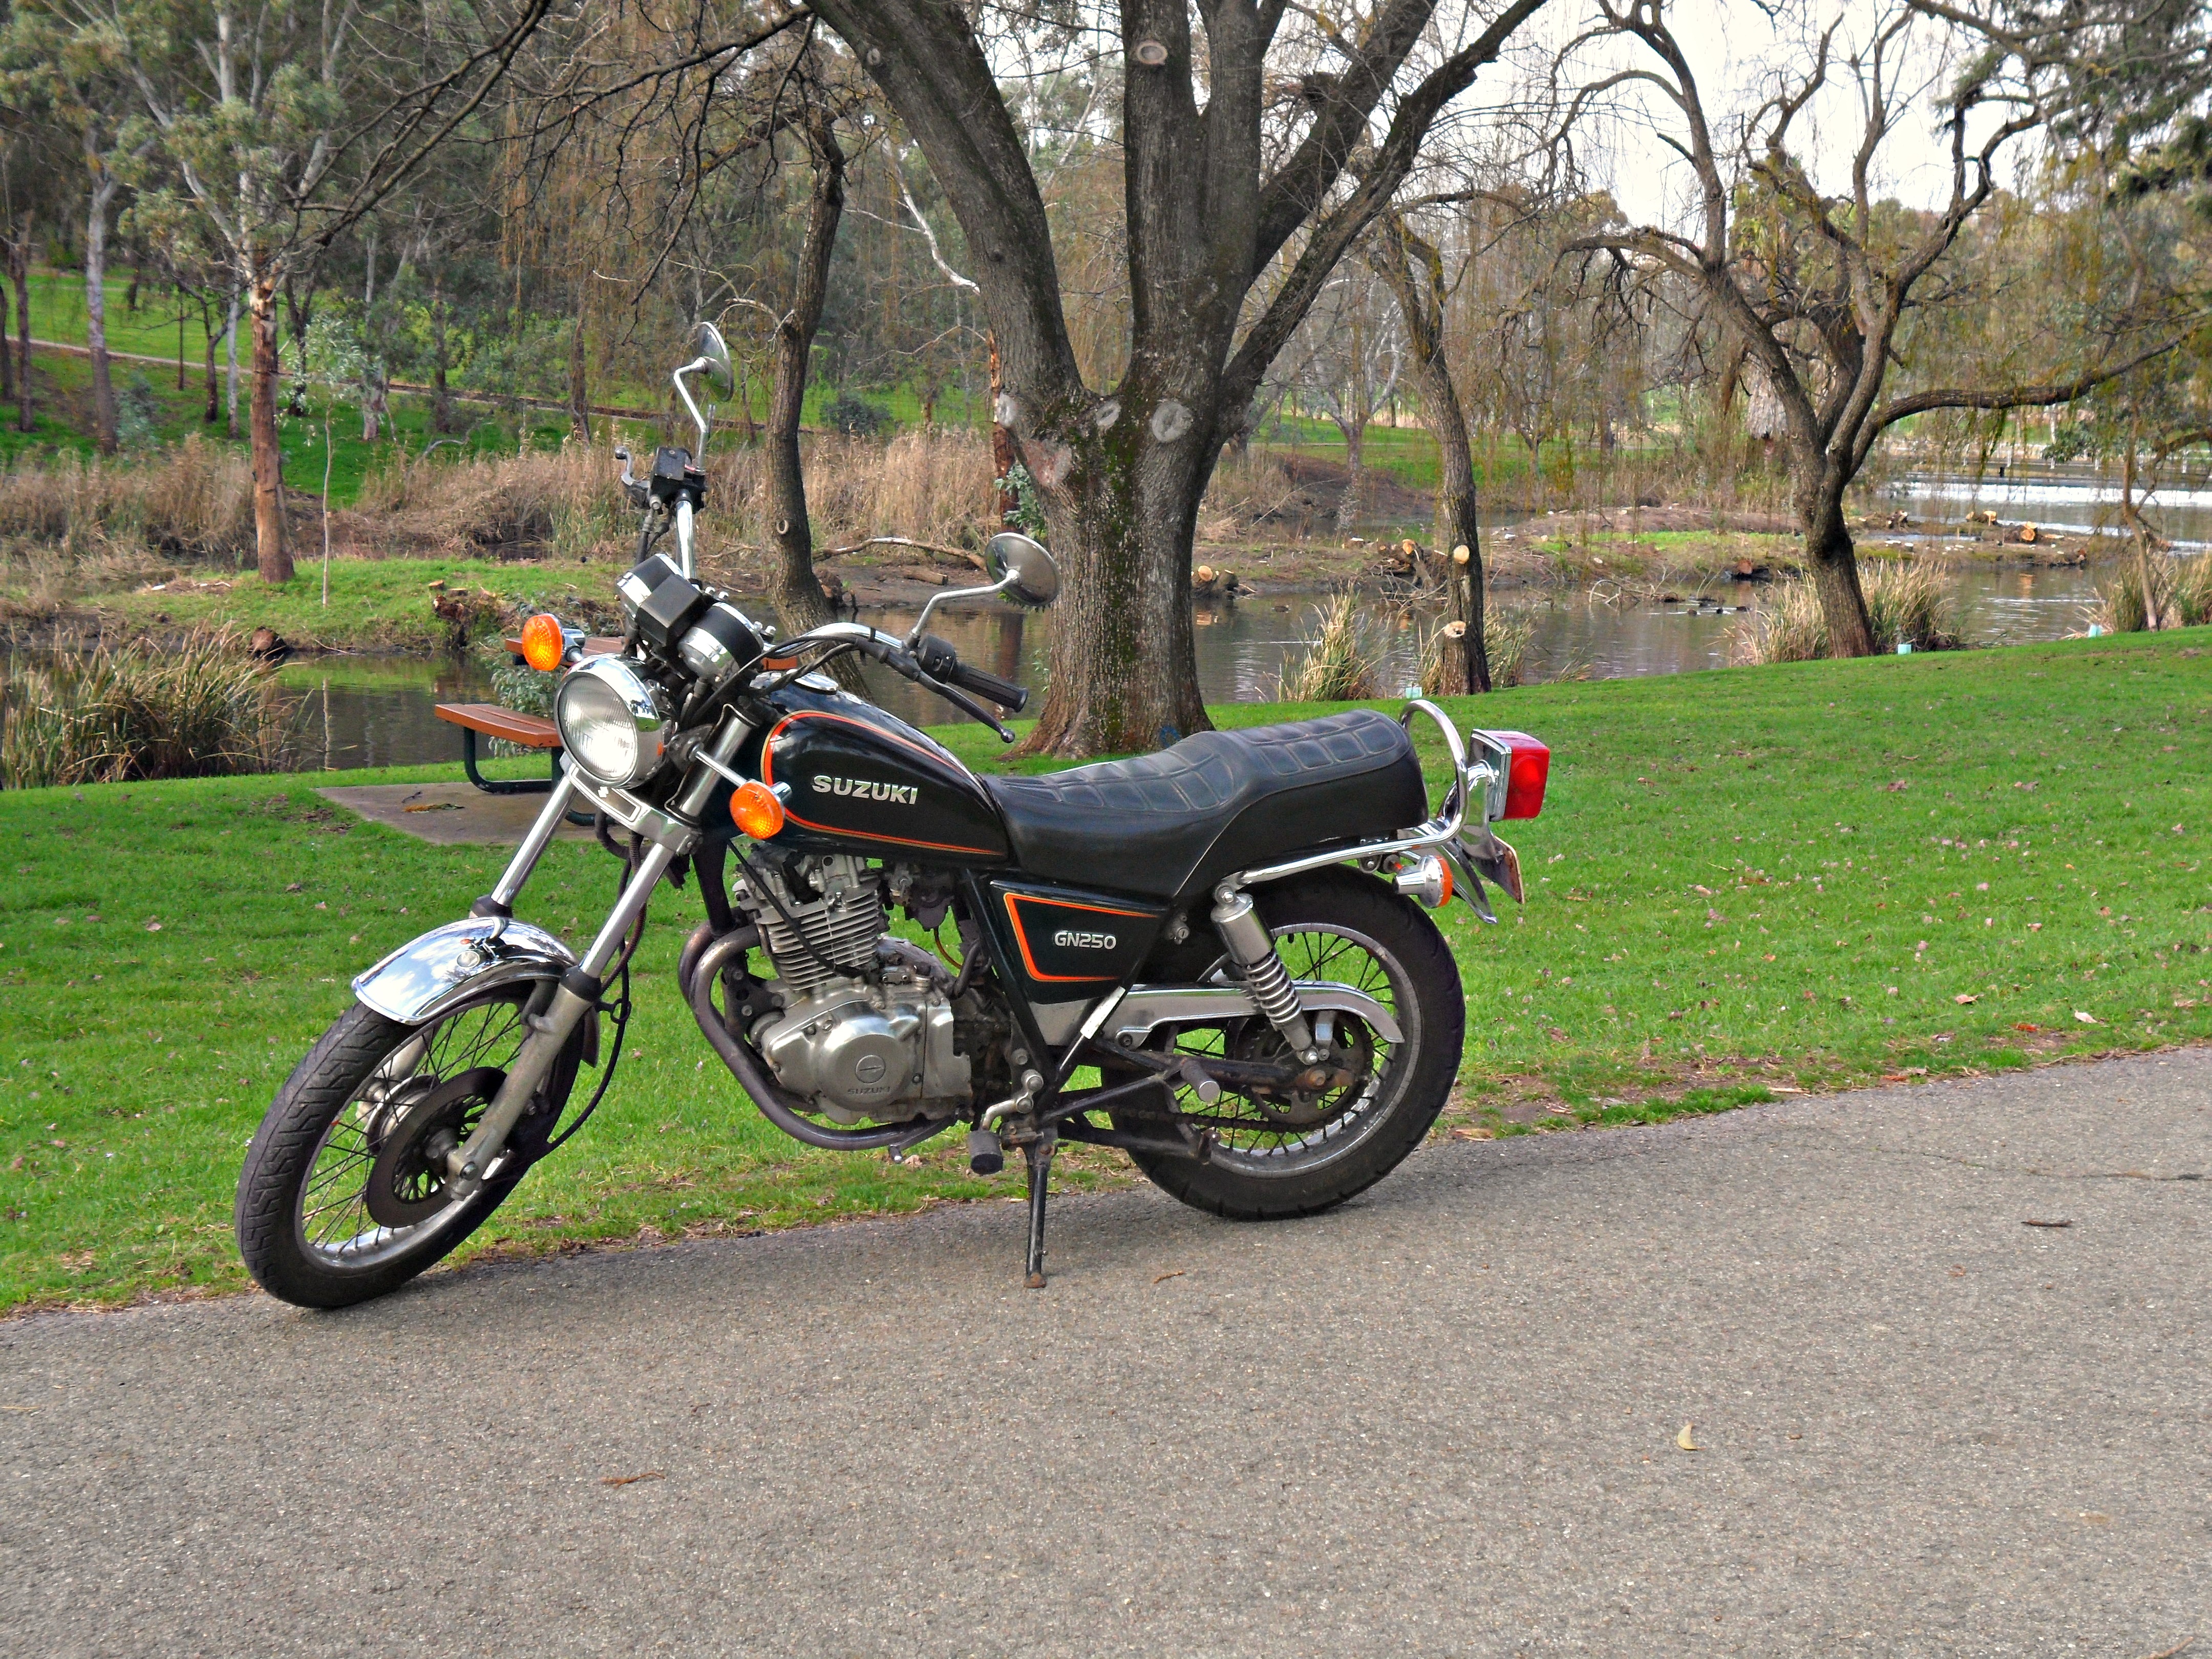 Suzuki_GN250_Motorcycle.JPG